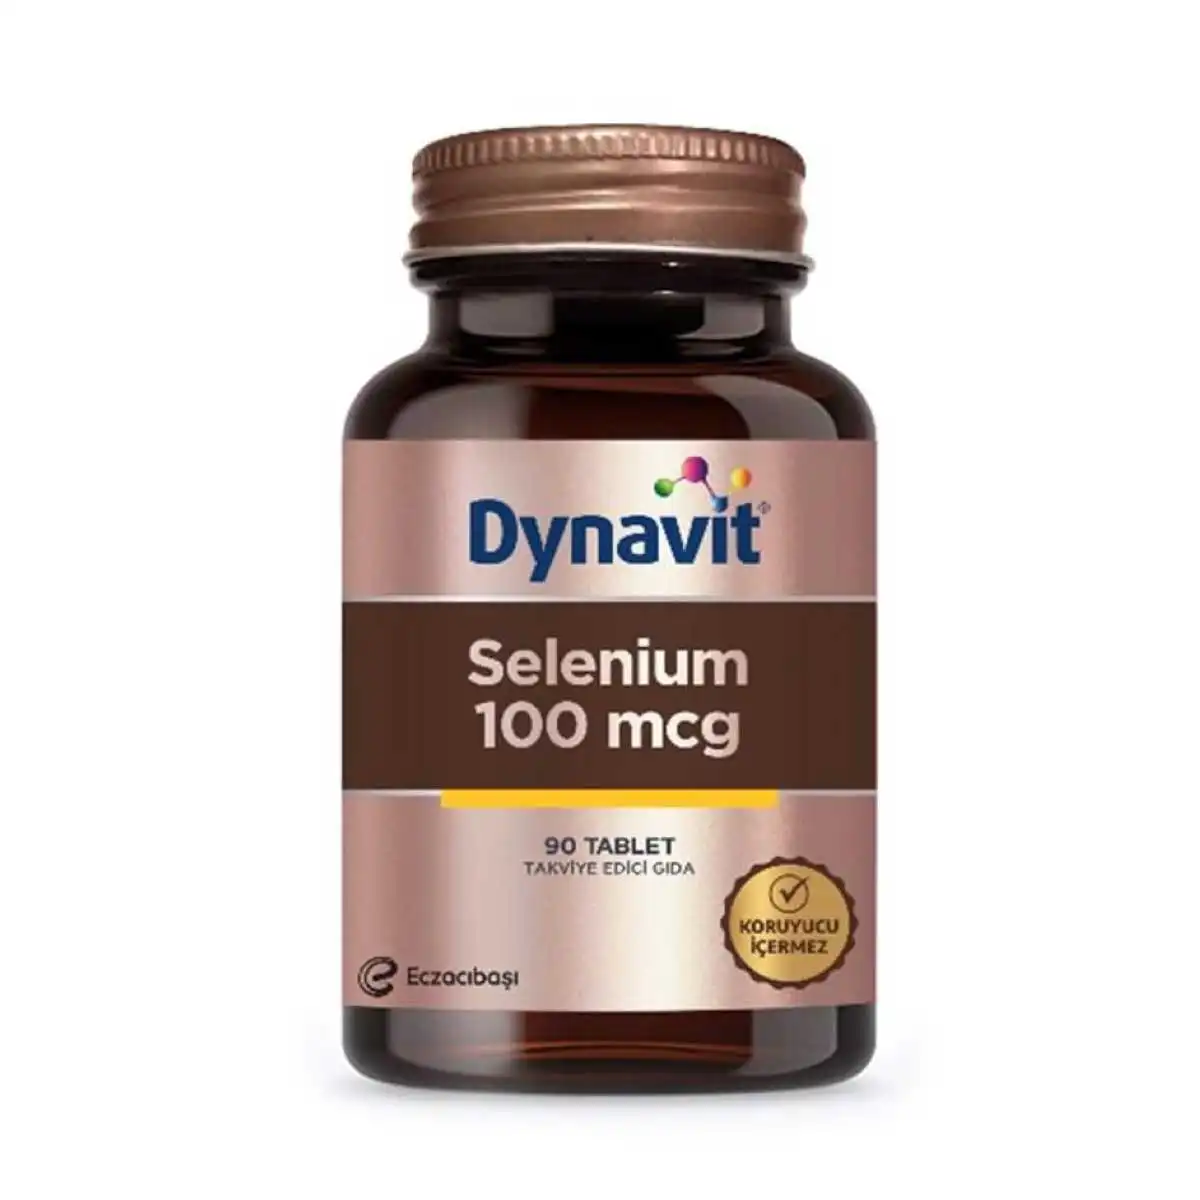 Vücudumuzun İhtiyacı En İyi Selenyum Takviyeleri Dynavit Selenium 100 Mcg 90 Tablet 